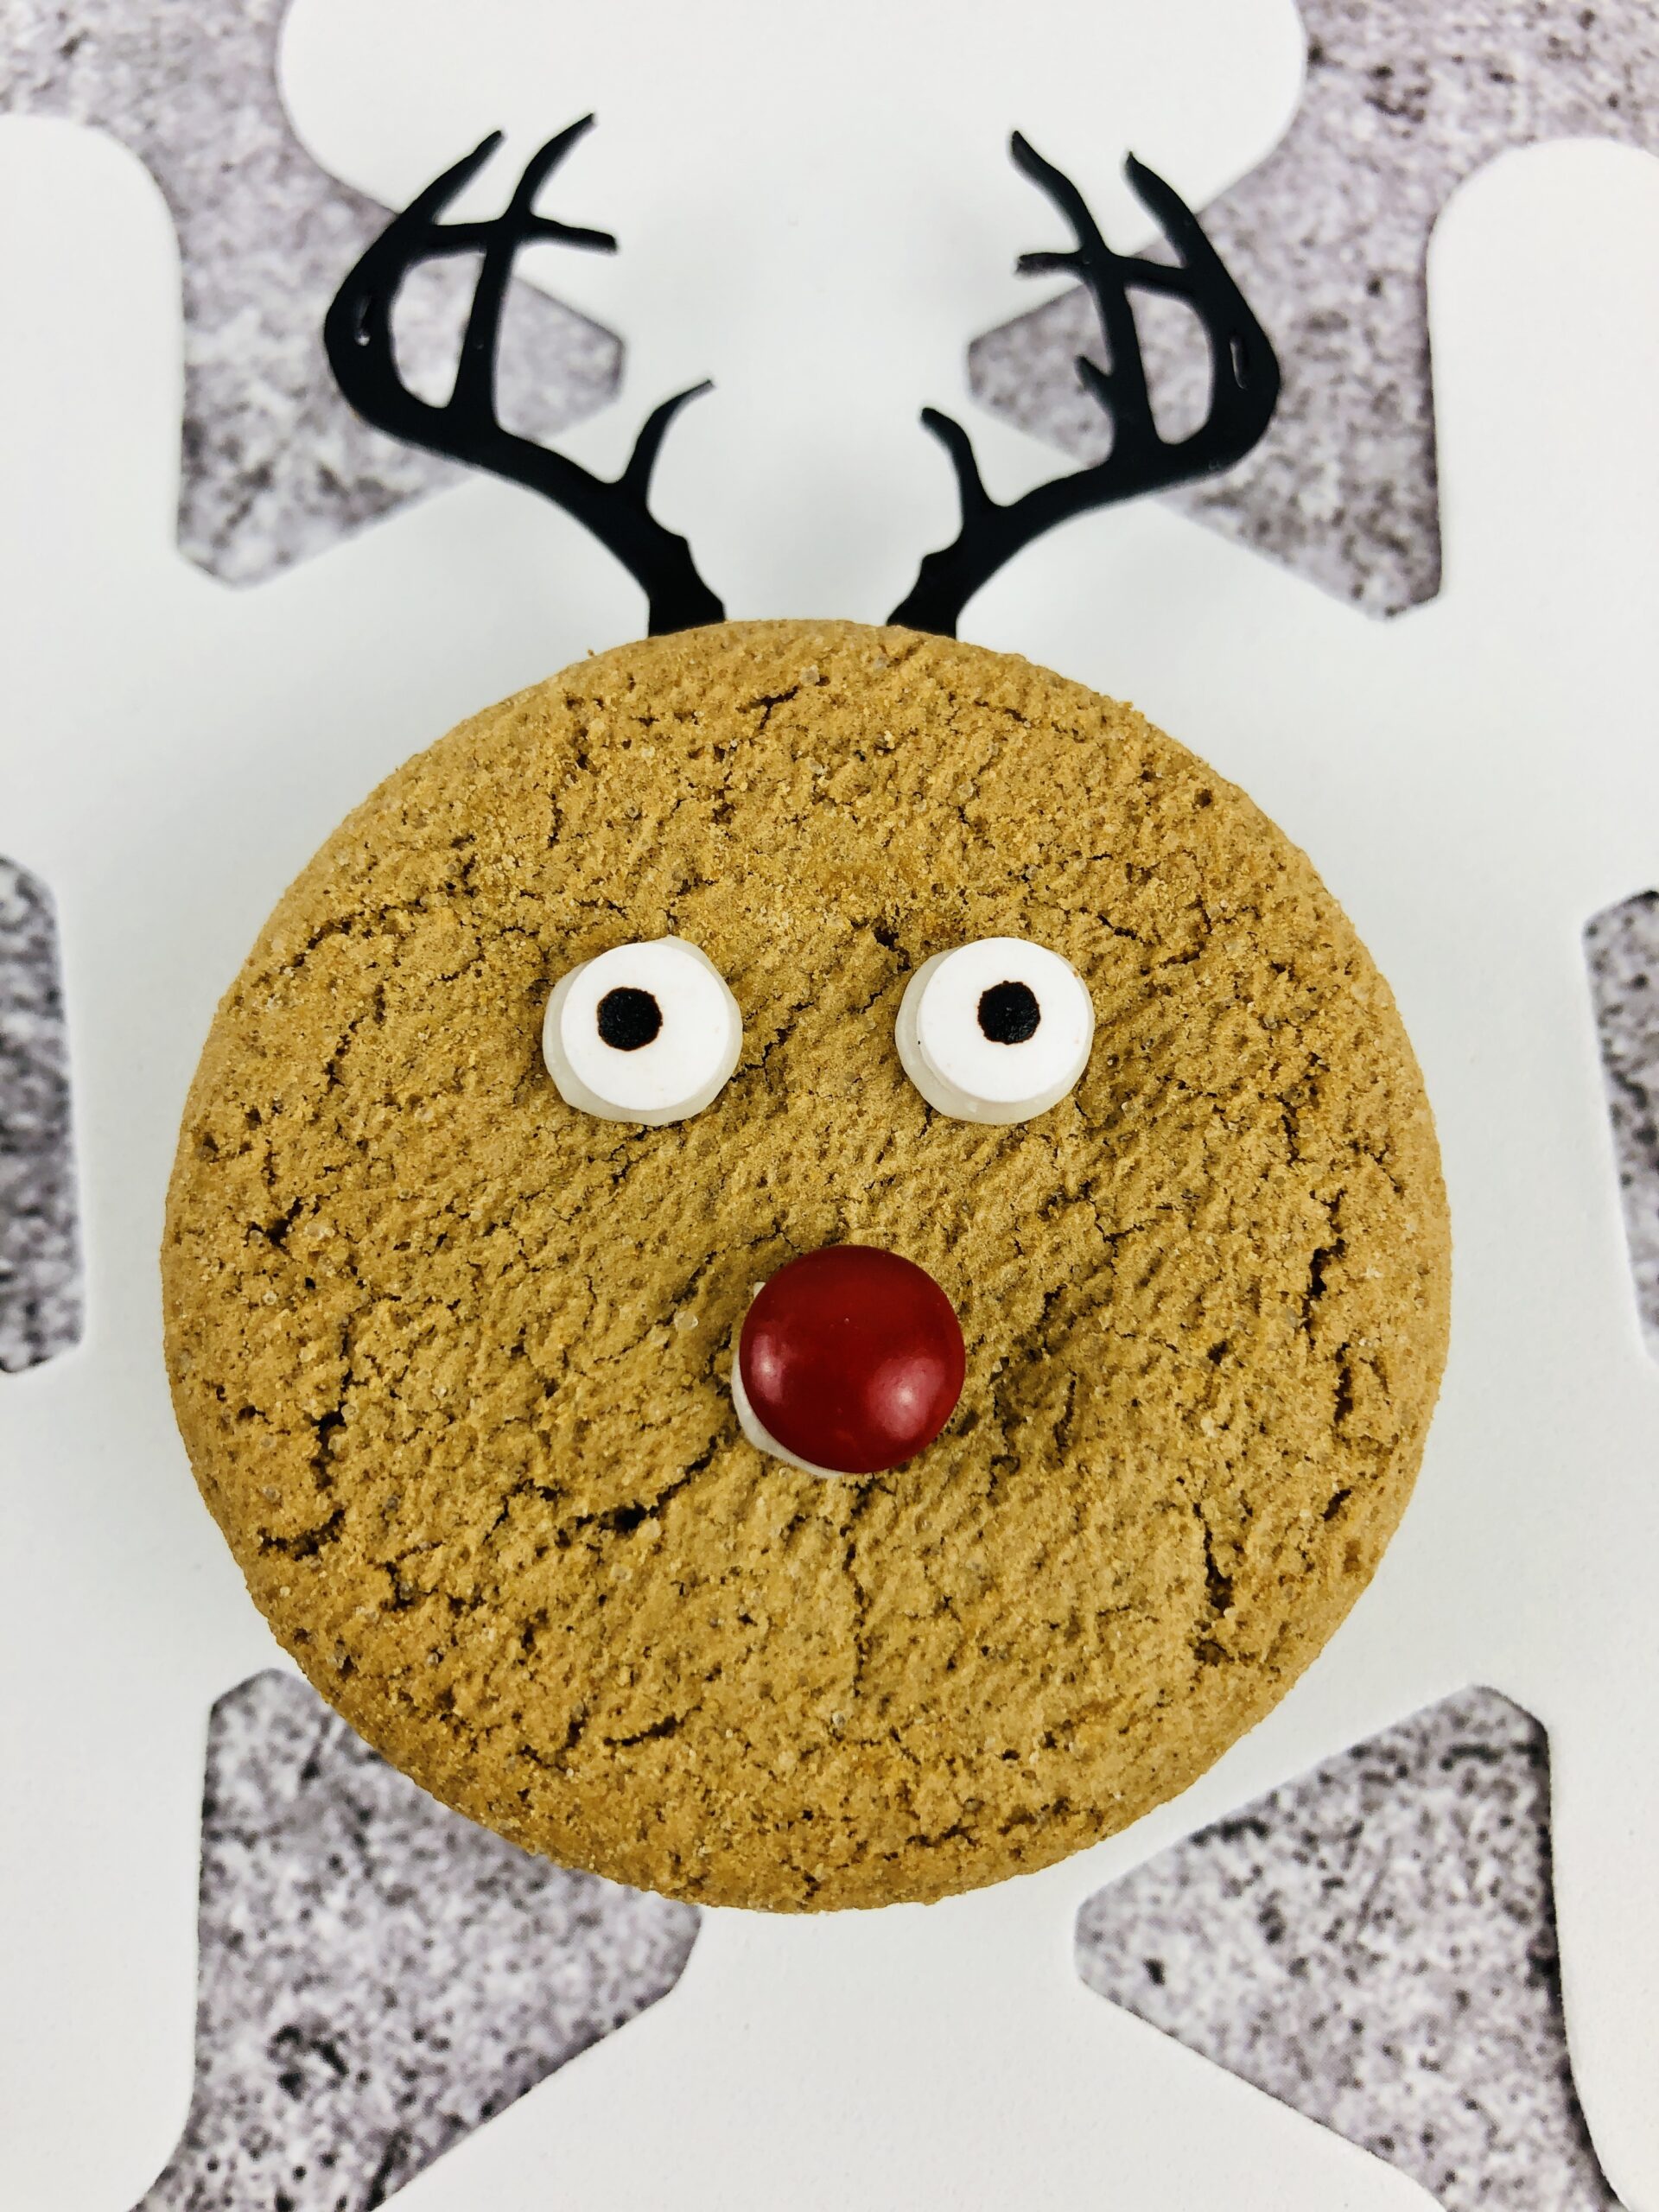 A single gingerbread reindeer cookie.